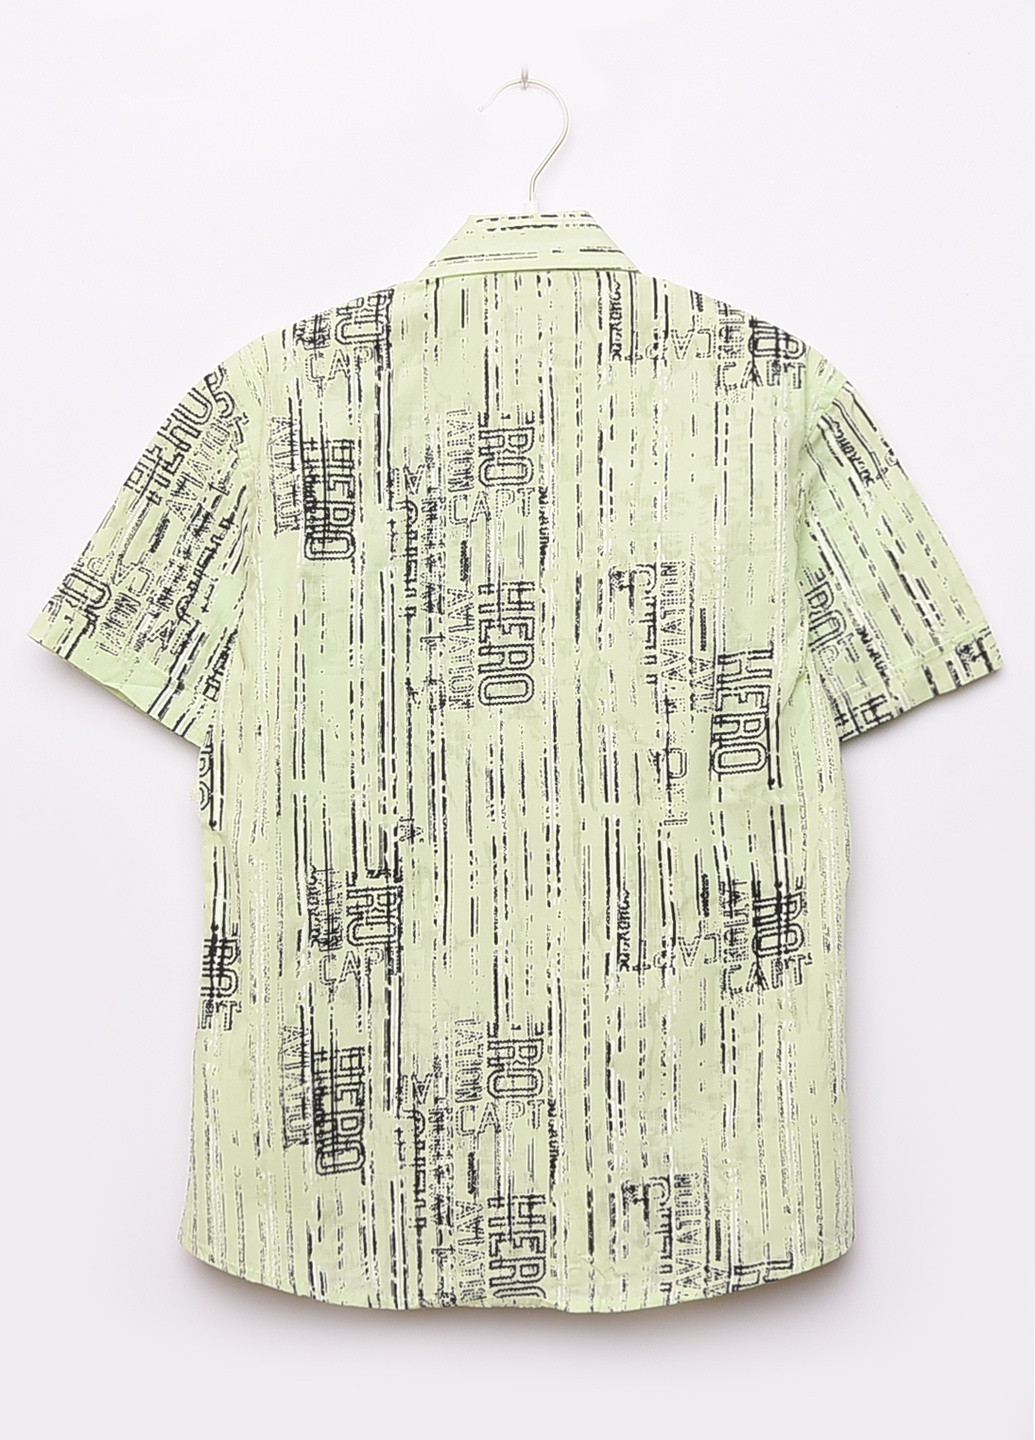 Салатовая классическая рубашка однотонная Let's Shop